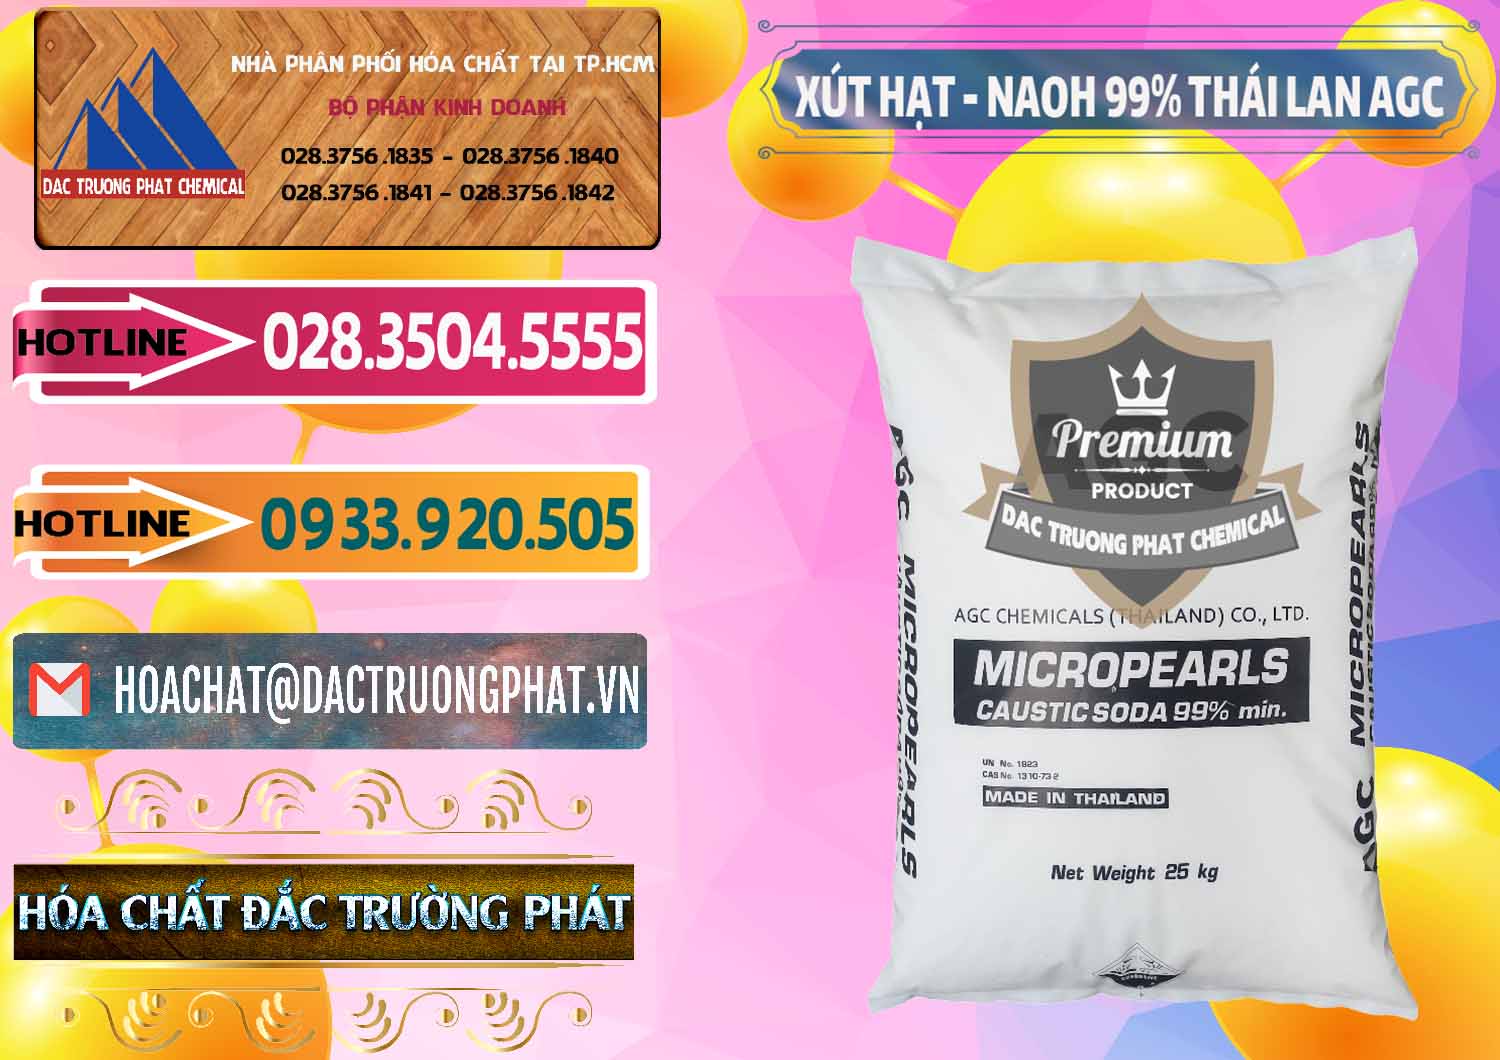 Chuyên cung ứng _ bán Xút Hạt - NaOH Bột 99% AGC Thái Lan - 0168 - Công ty cung cấp & phân phối hóa chất tại TP.HCM - dactruongphat.vn